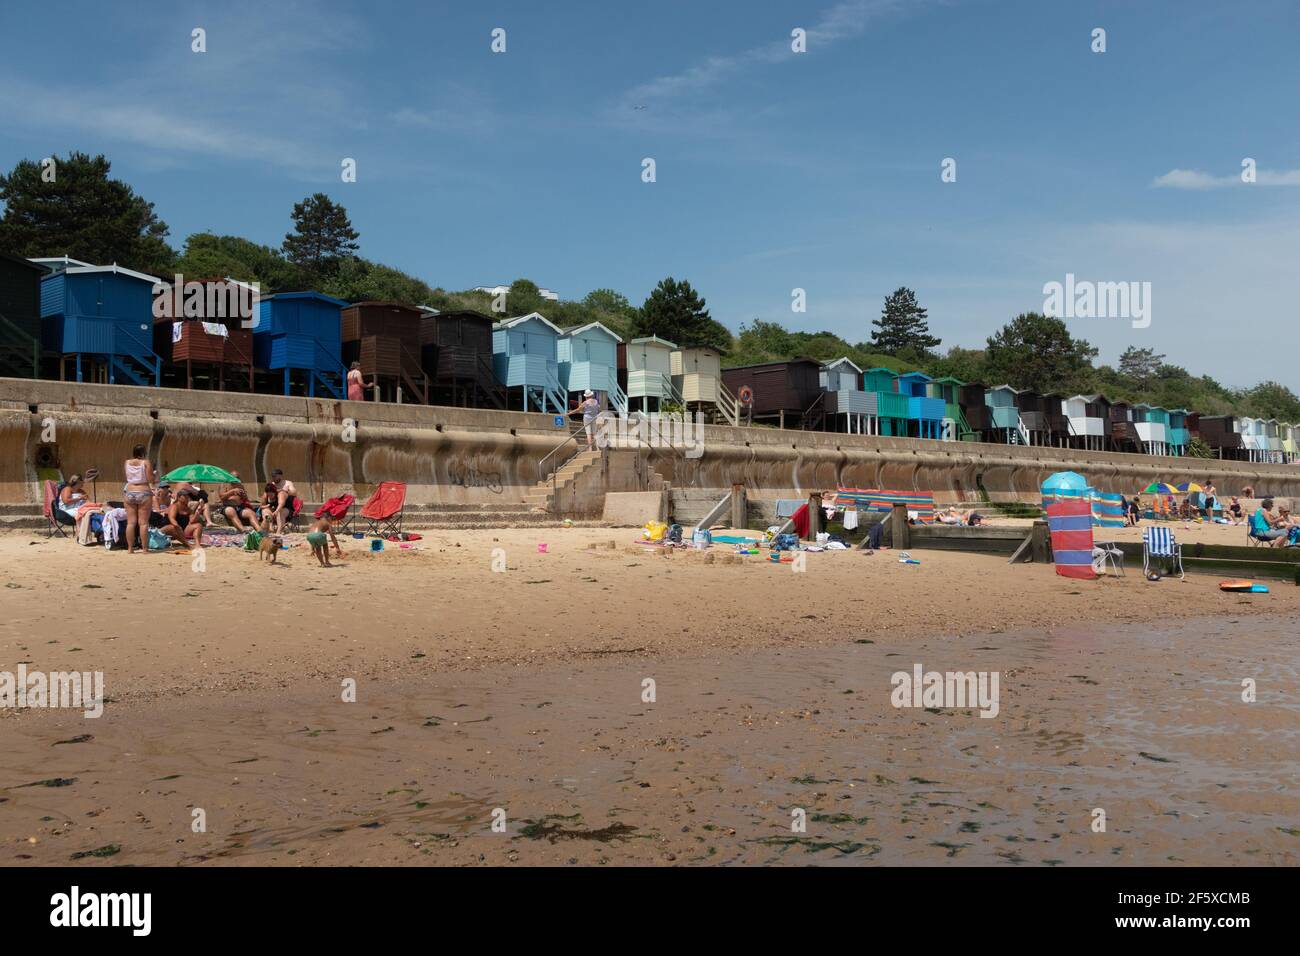 Capanne sulla spiaggia che si affacciano sul mare a Frinton-on-Sea, una piccola cittadina costiera inglese della costa orientale Foto Stock